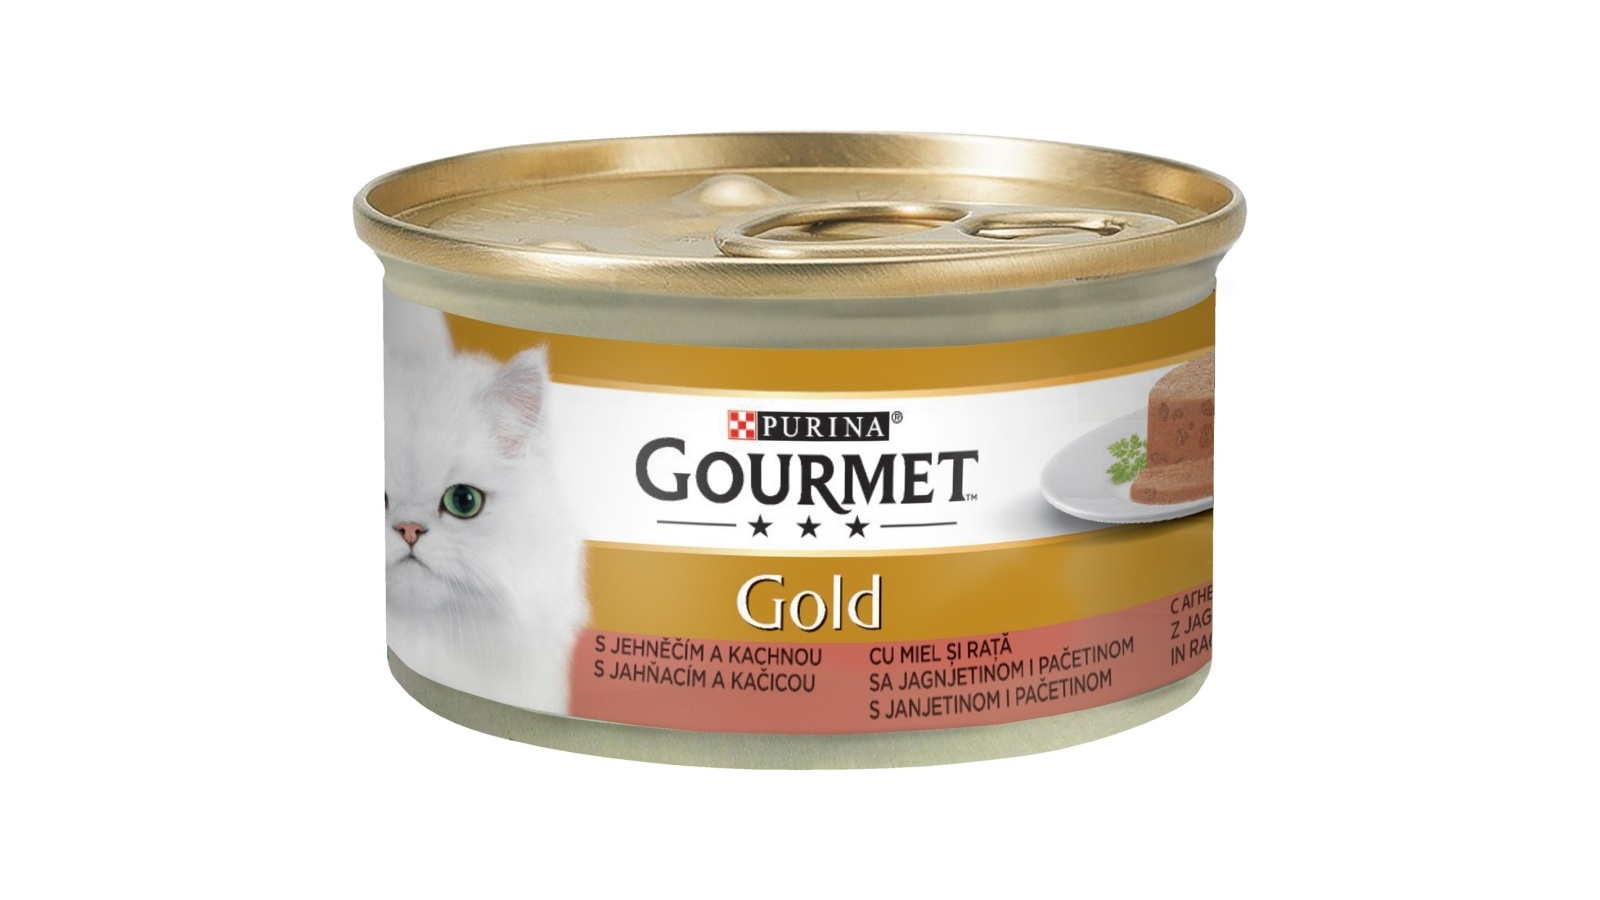 GOURMET Gold pačetina 85g - Cenoteka